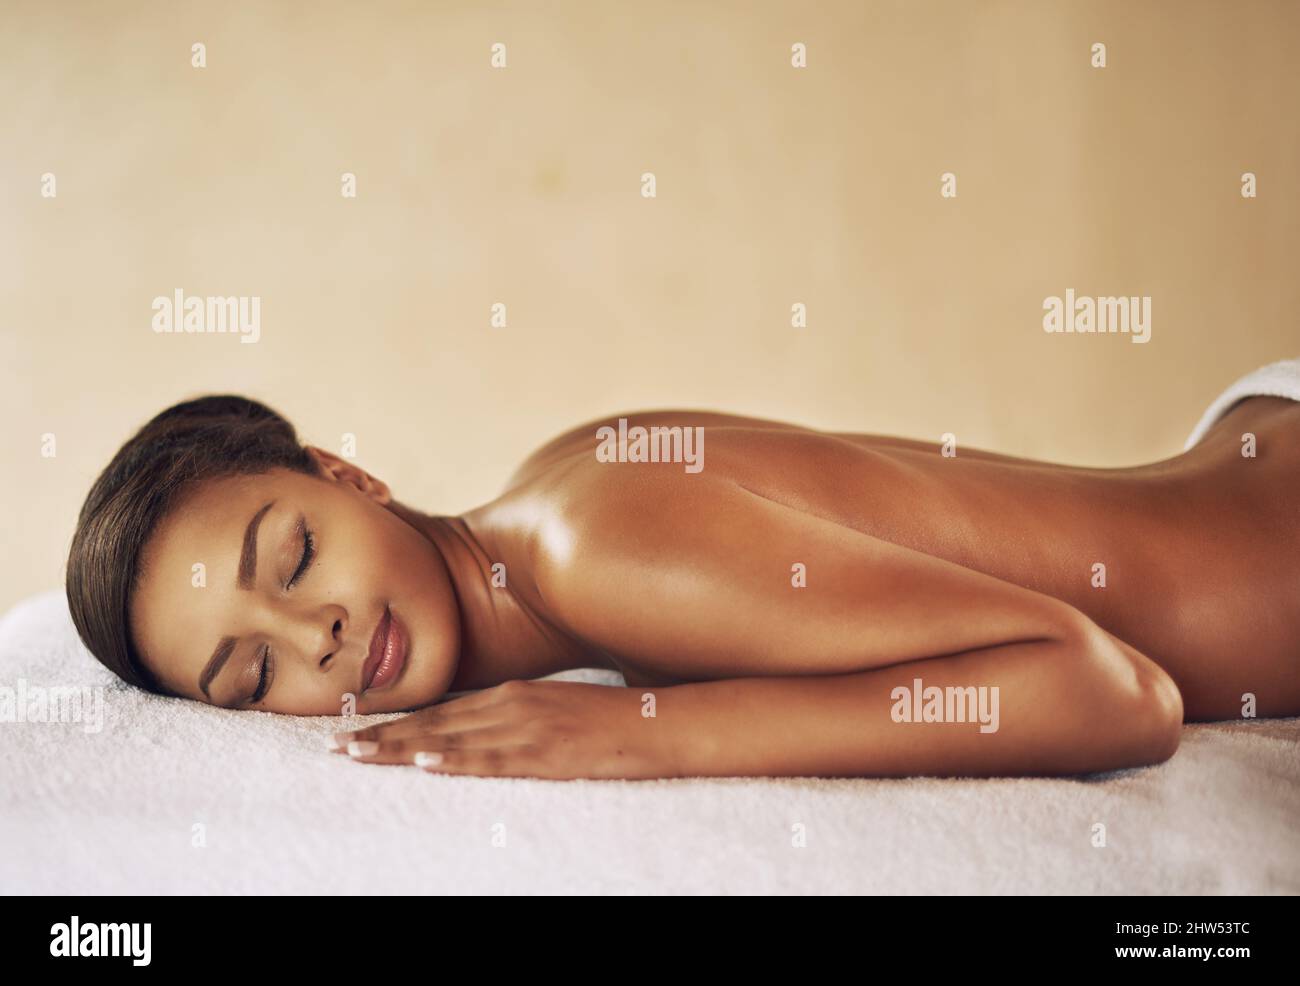 Cuidado de todo el cuerpo. Foto recortada de una mujer joven que recibe un masaje en el spa. Foto de stock